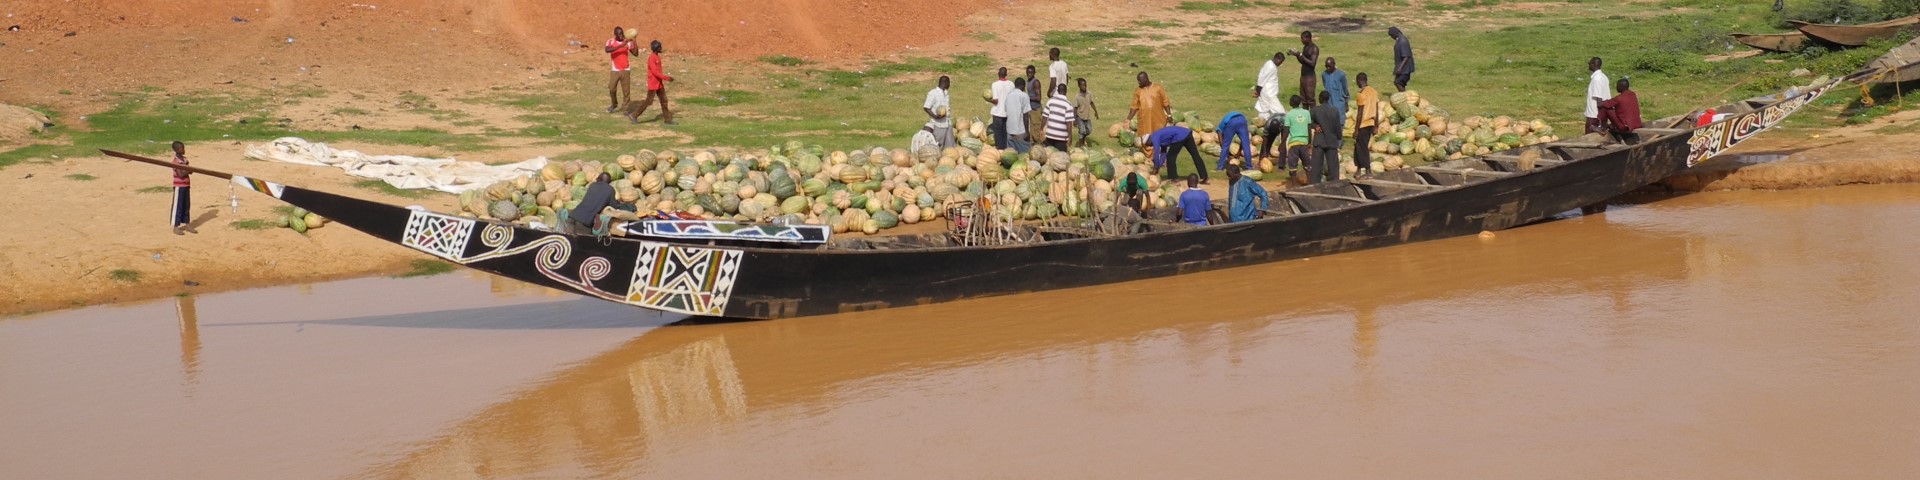 Menschen entladen ein Holzschiff mit Kürbissen in Niger.